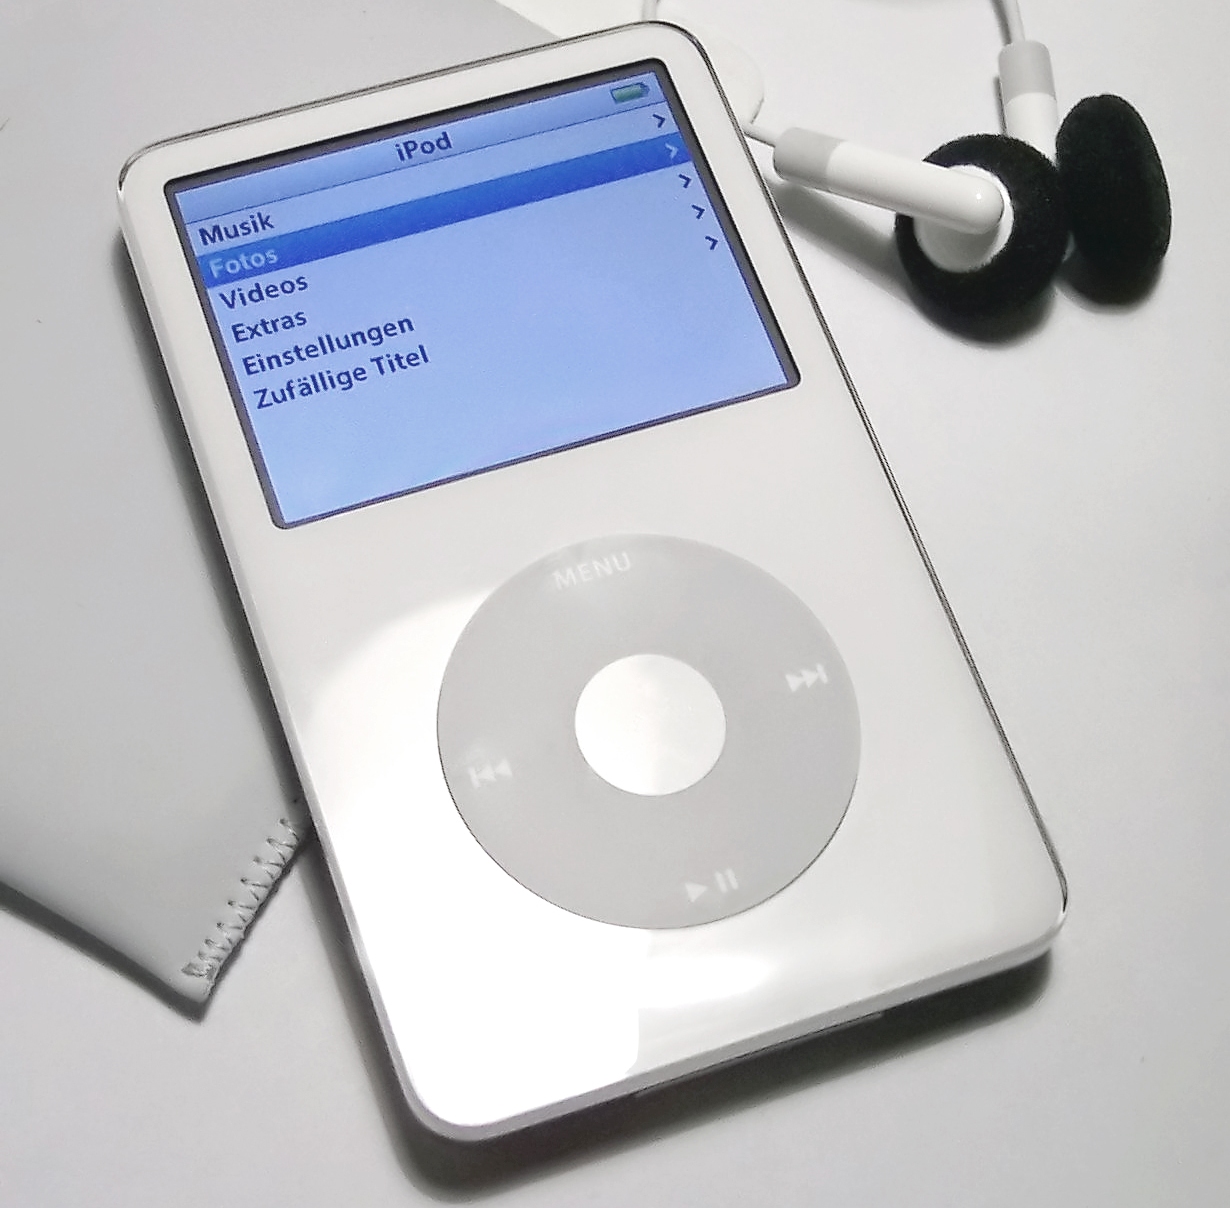 iPod стал основной технической новинкой